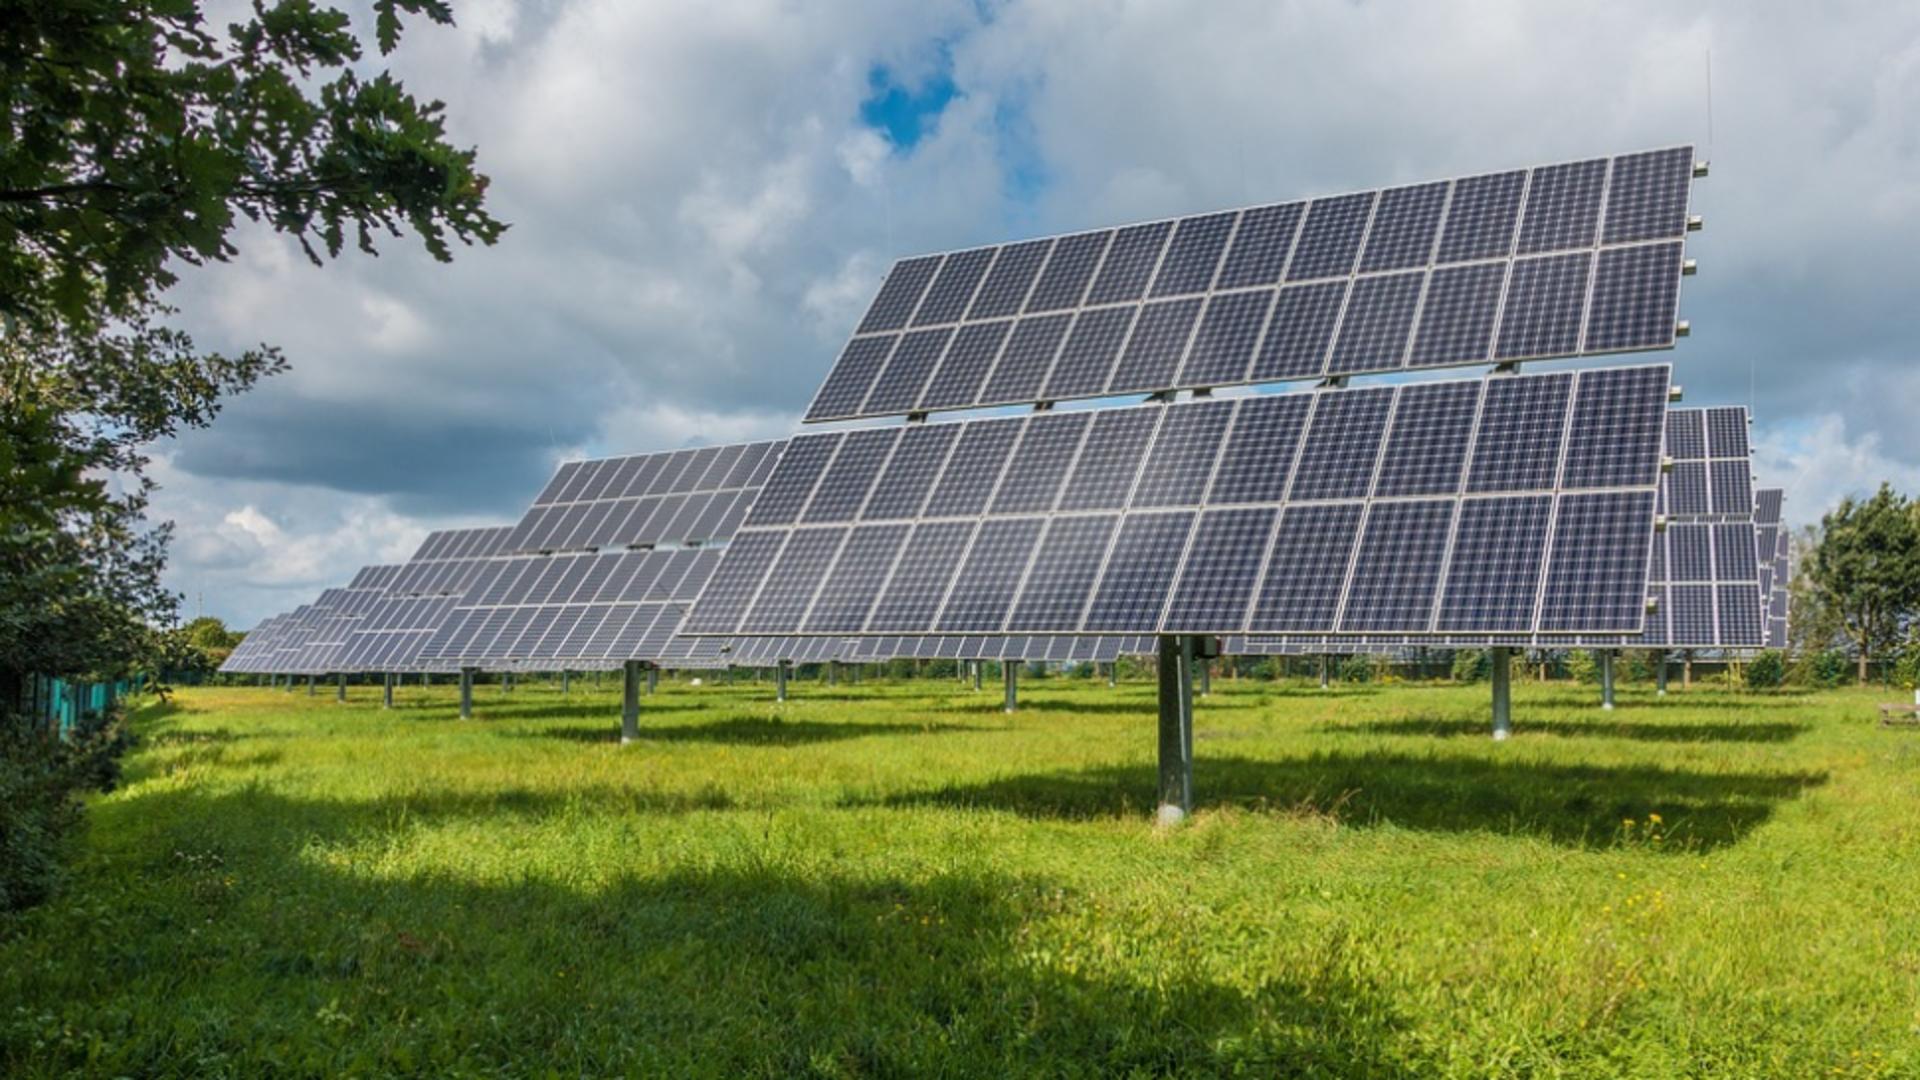 Blaj intenționează să devină independent energetic prin construcția unui parc fotovoltaic